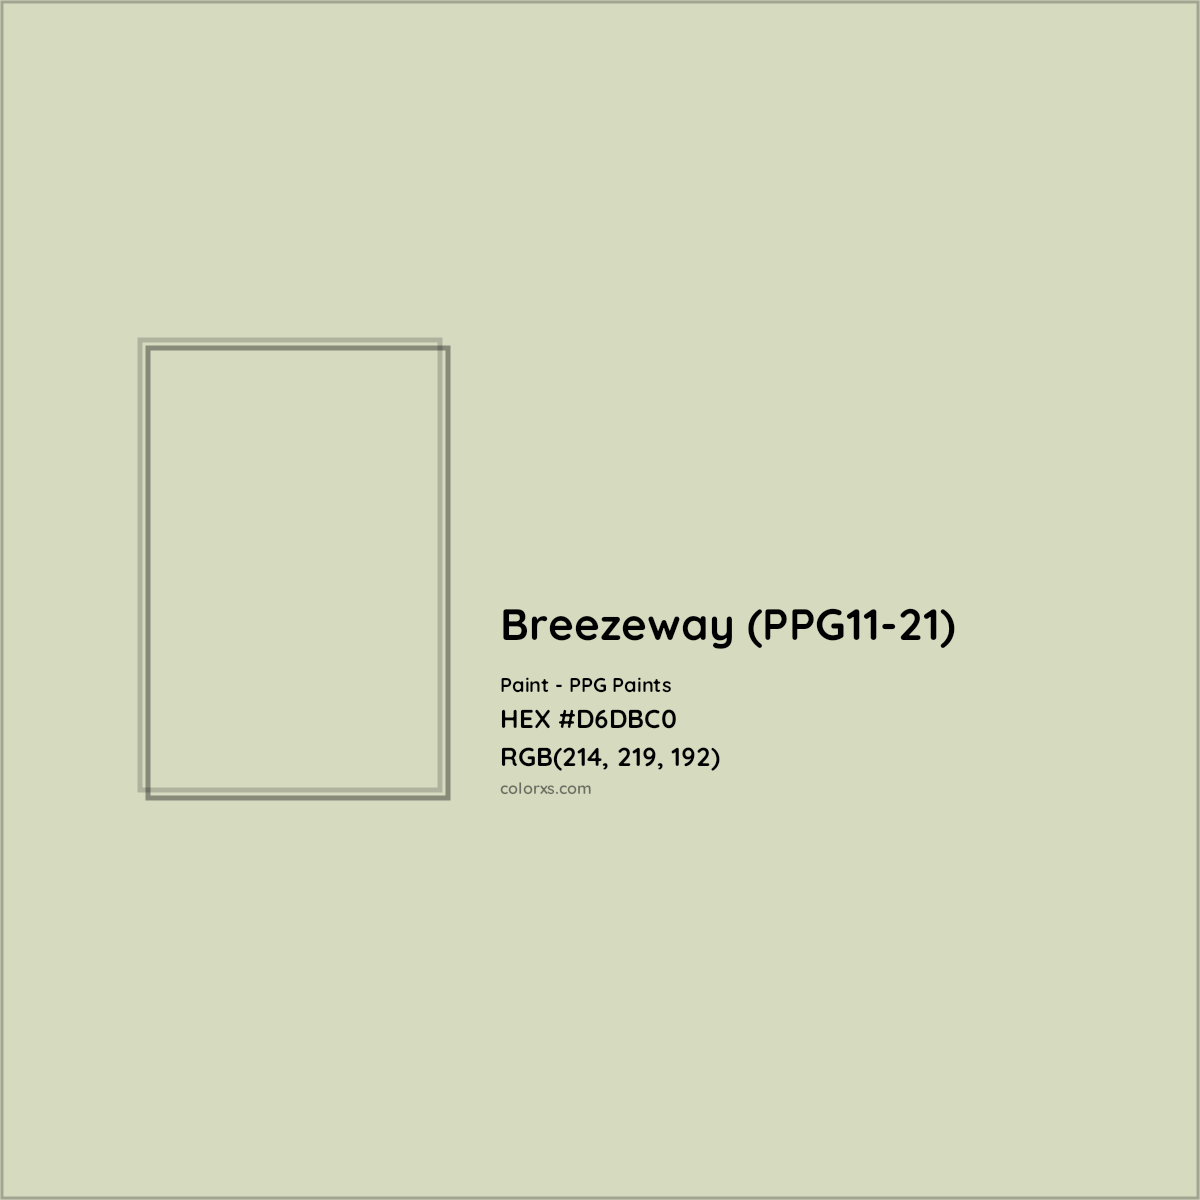 HEX #D6DBC0 Breezeway (PPG11-21) Paint PPG Paints - Color Code